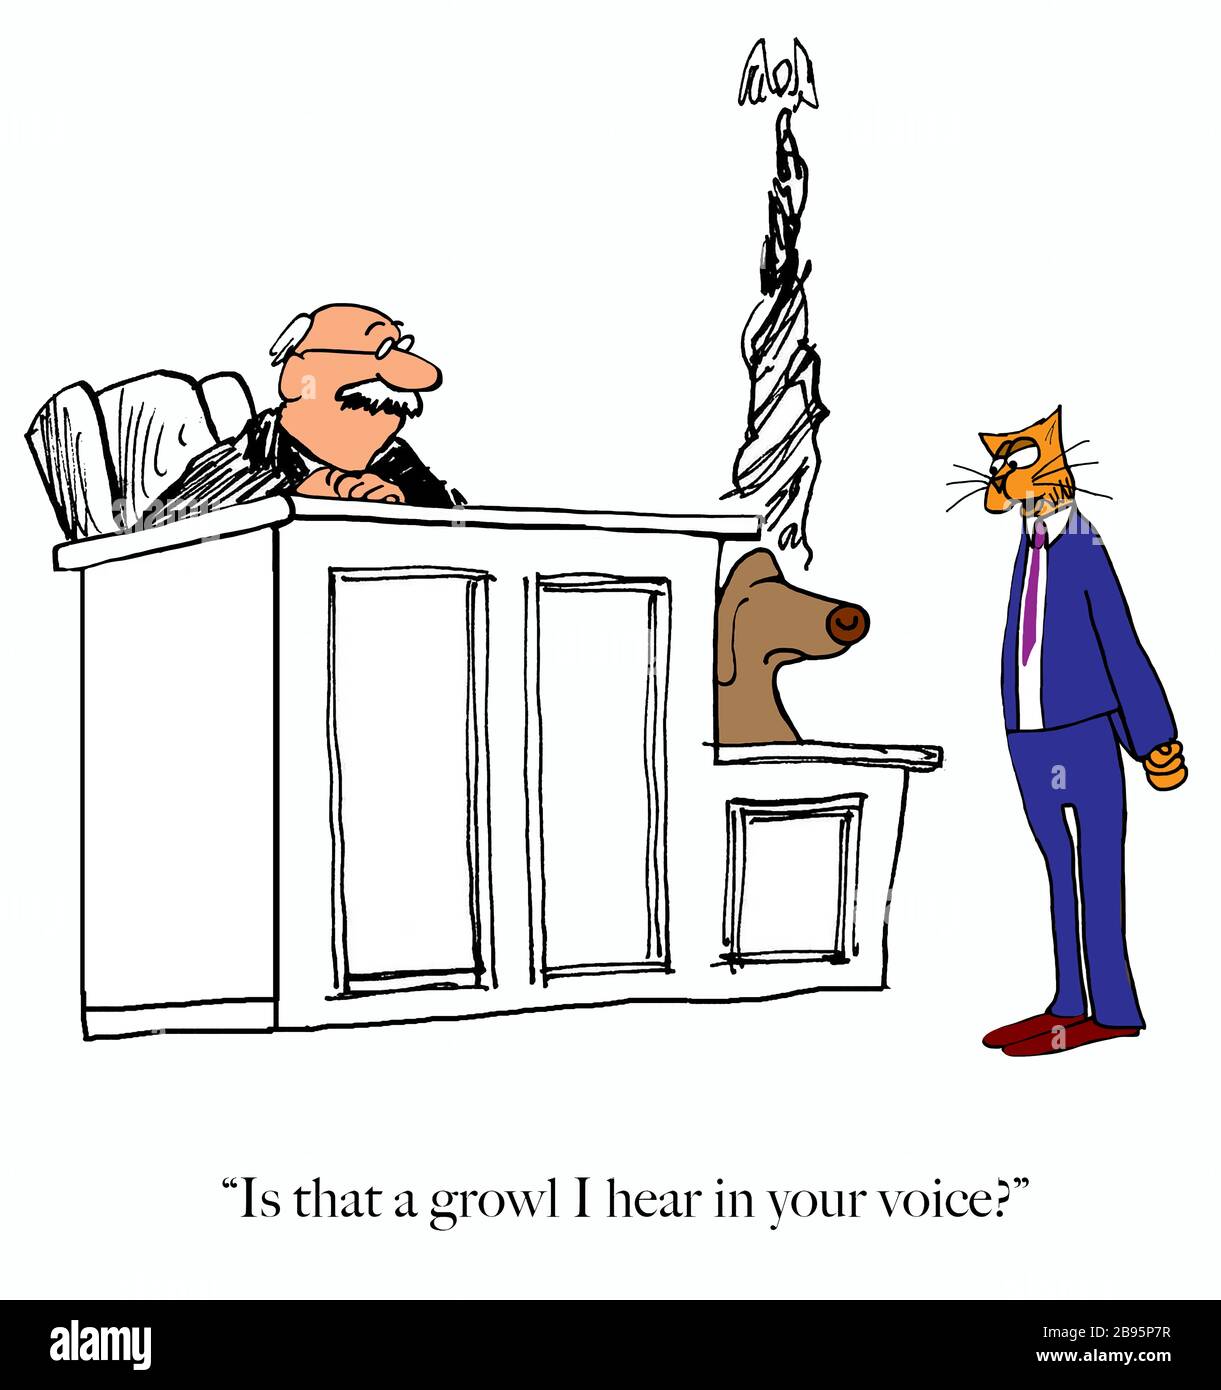 Ein Cartoon, der einen unzufriedenen Hund auf dem Stand darstellt, der mit einem bisschen Knurren auf den Anwalt der Katze reagiert. Stockfoto